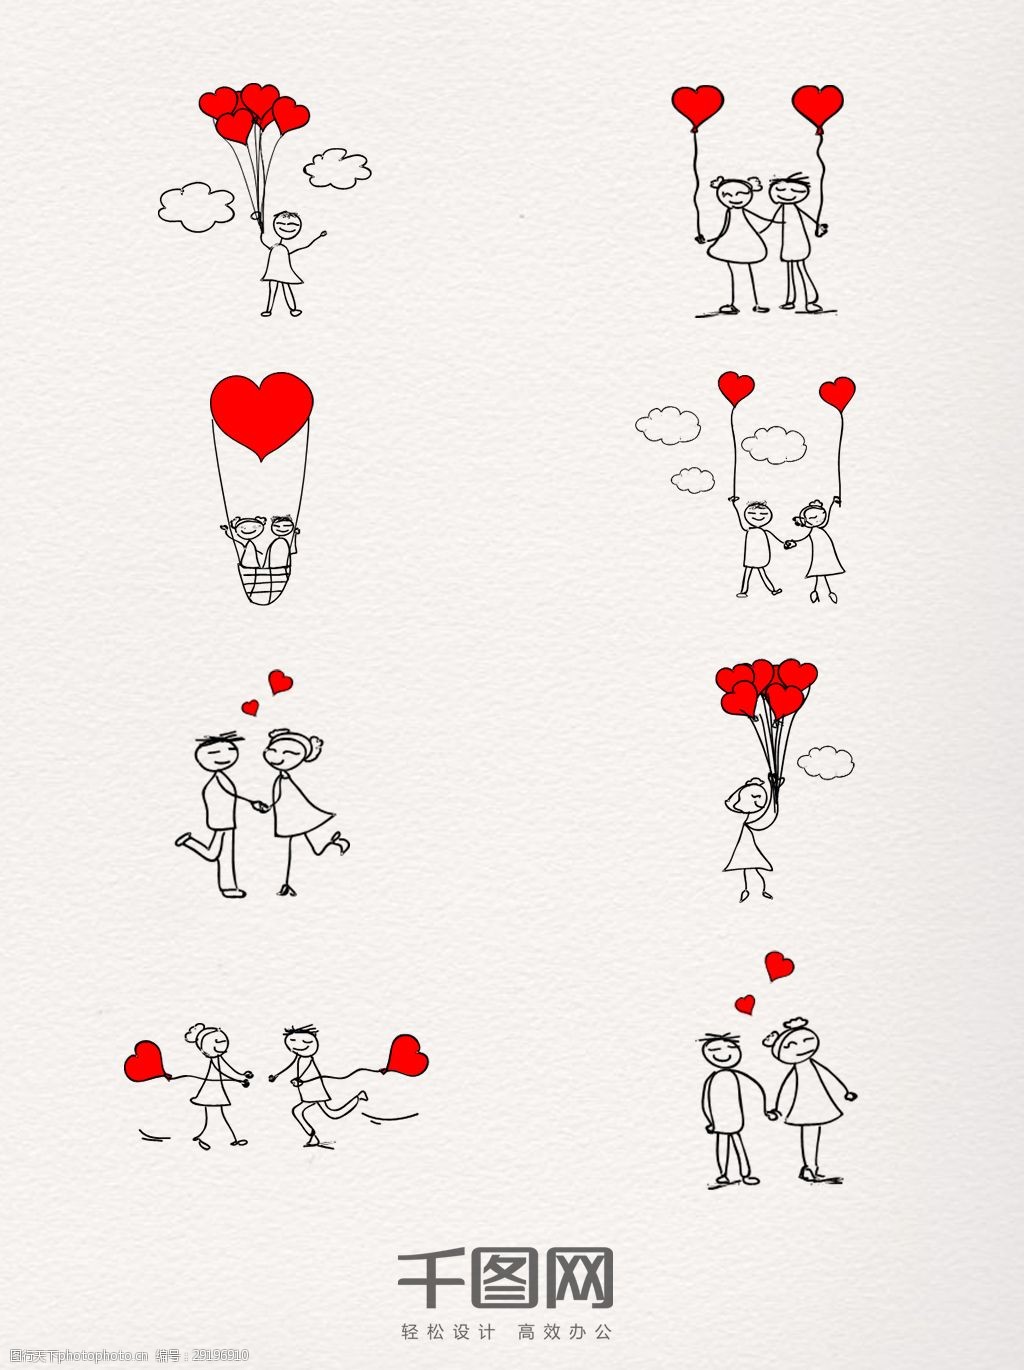 关键词:热恋中的情侣简单线条手绘图 情人节 爱心 爱情 手绘 恋爱